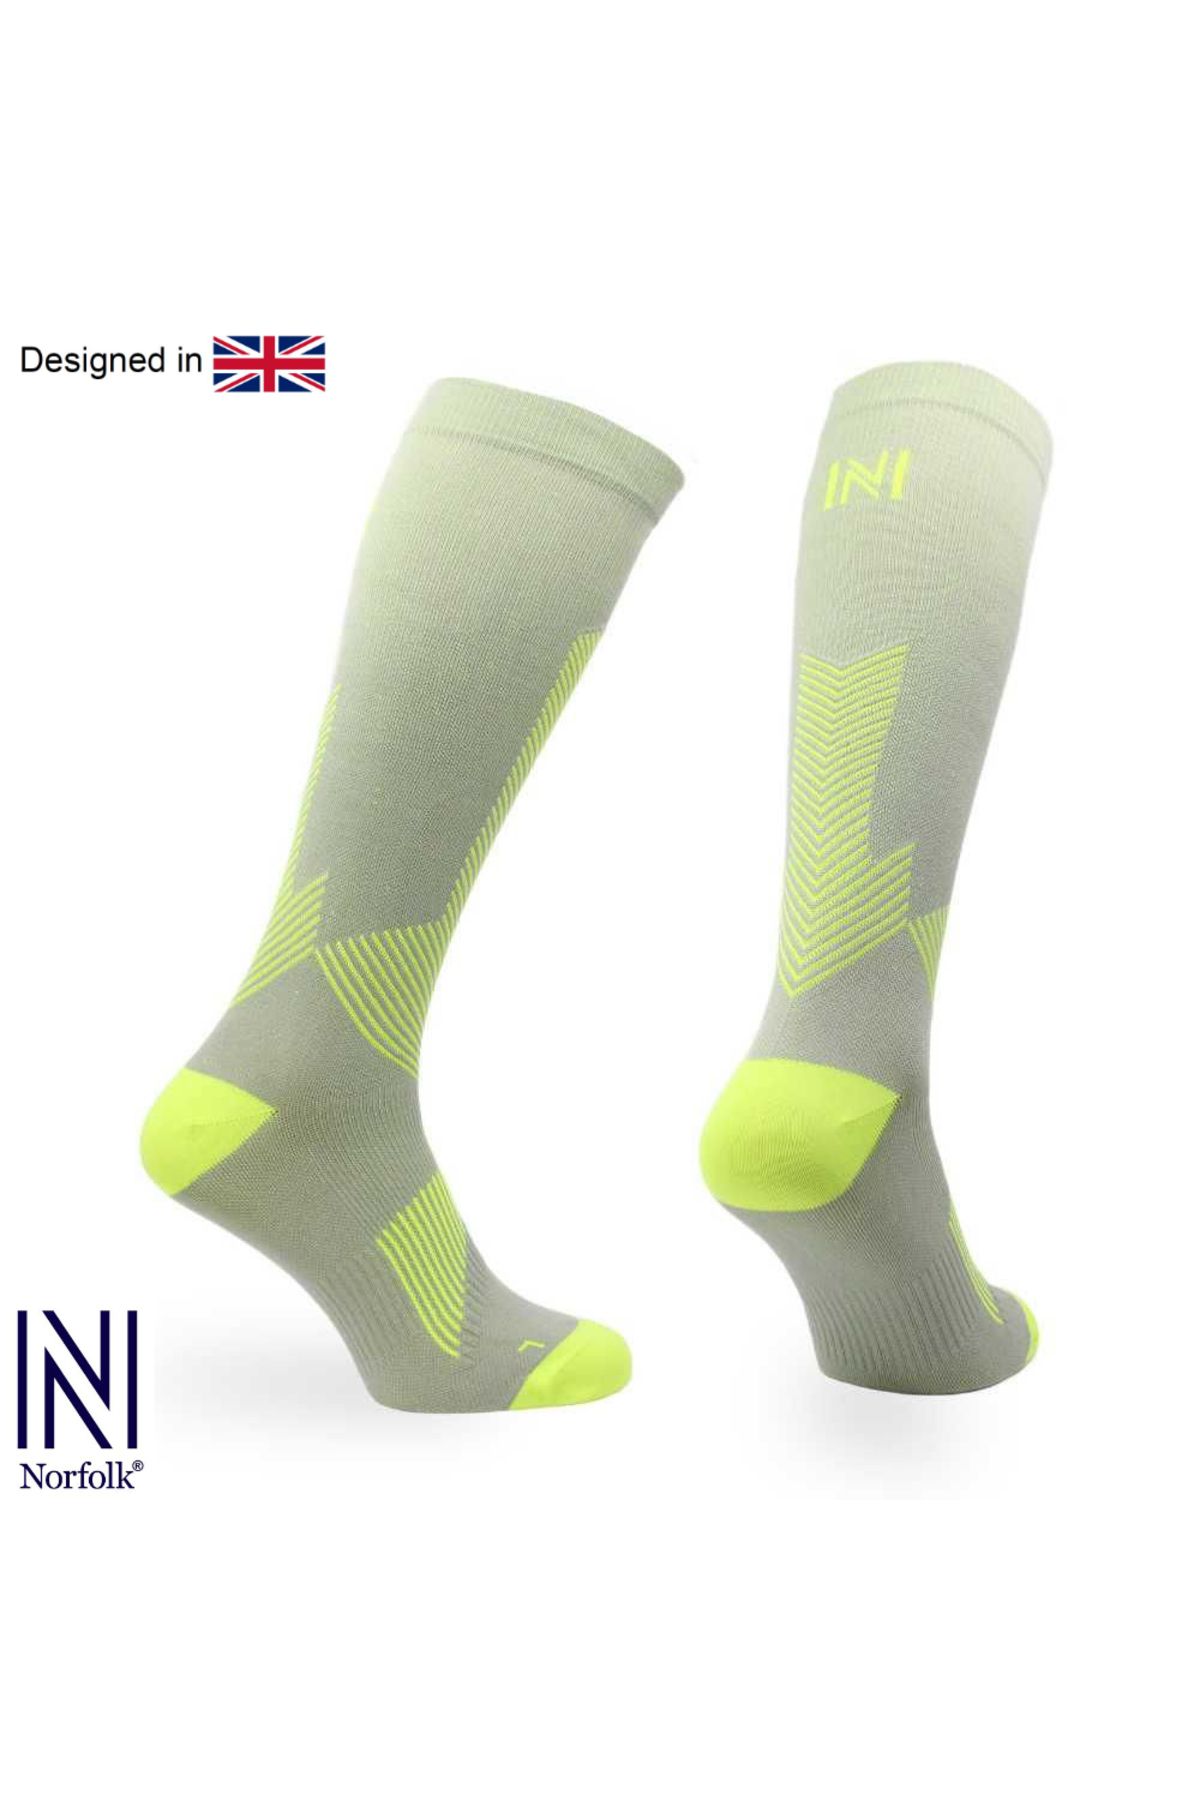 Norfolk Valencia Merly Skinlife Compression Uzun Koşu Çorapları (GRİ)